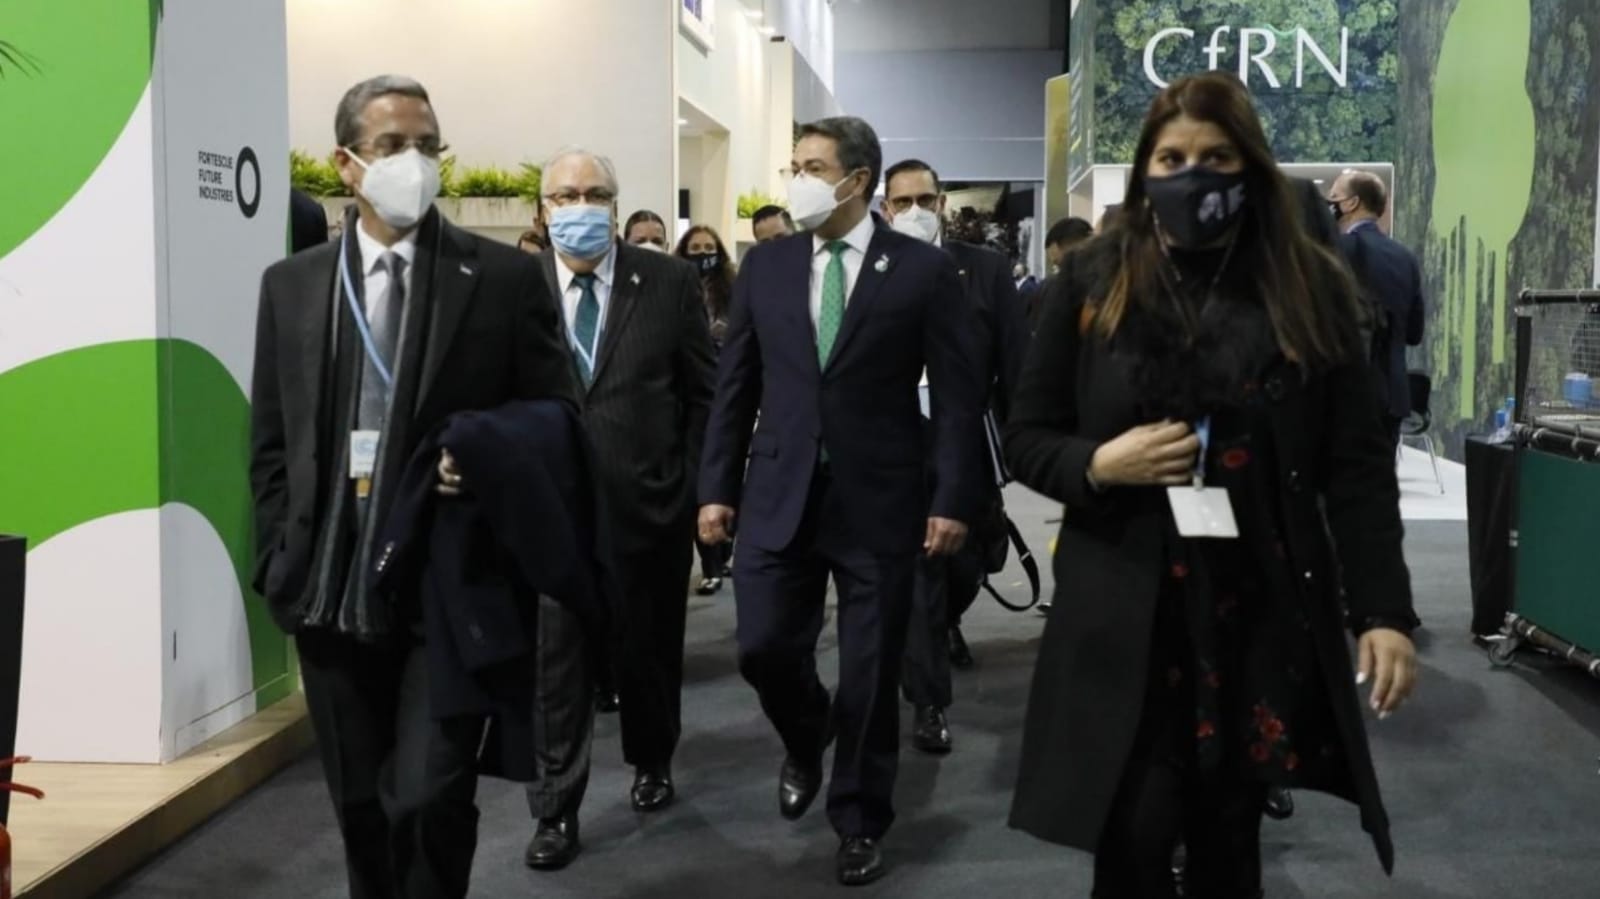 JOH cumbre del clima COP26